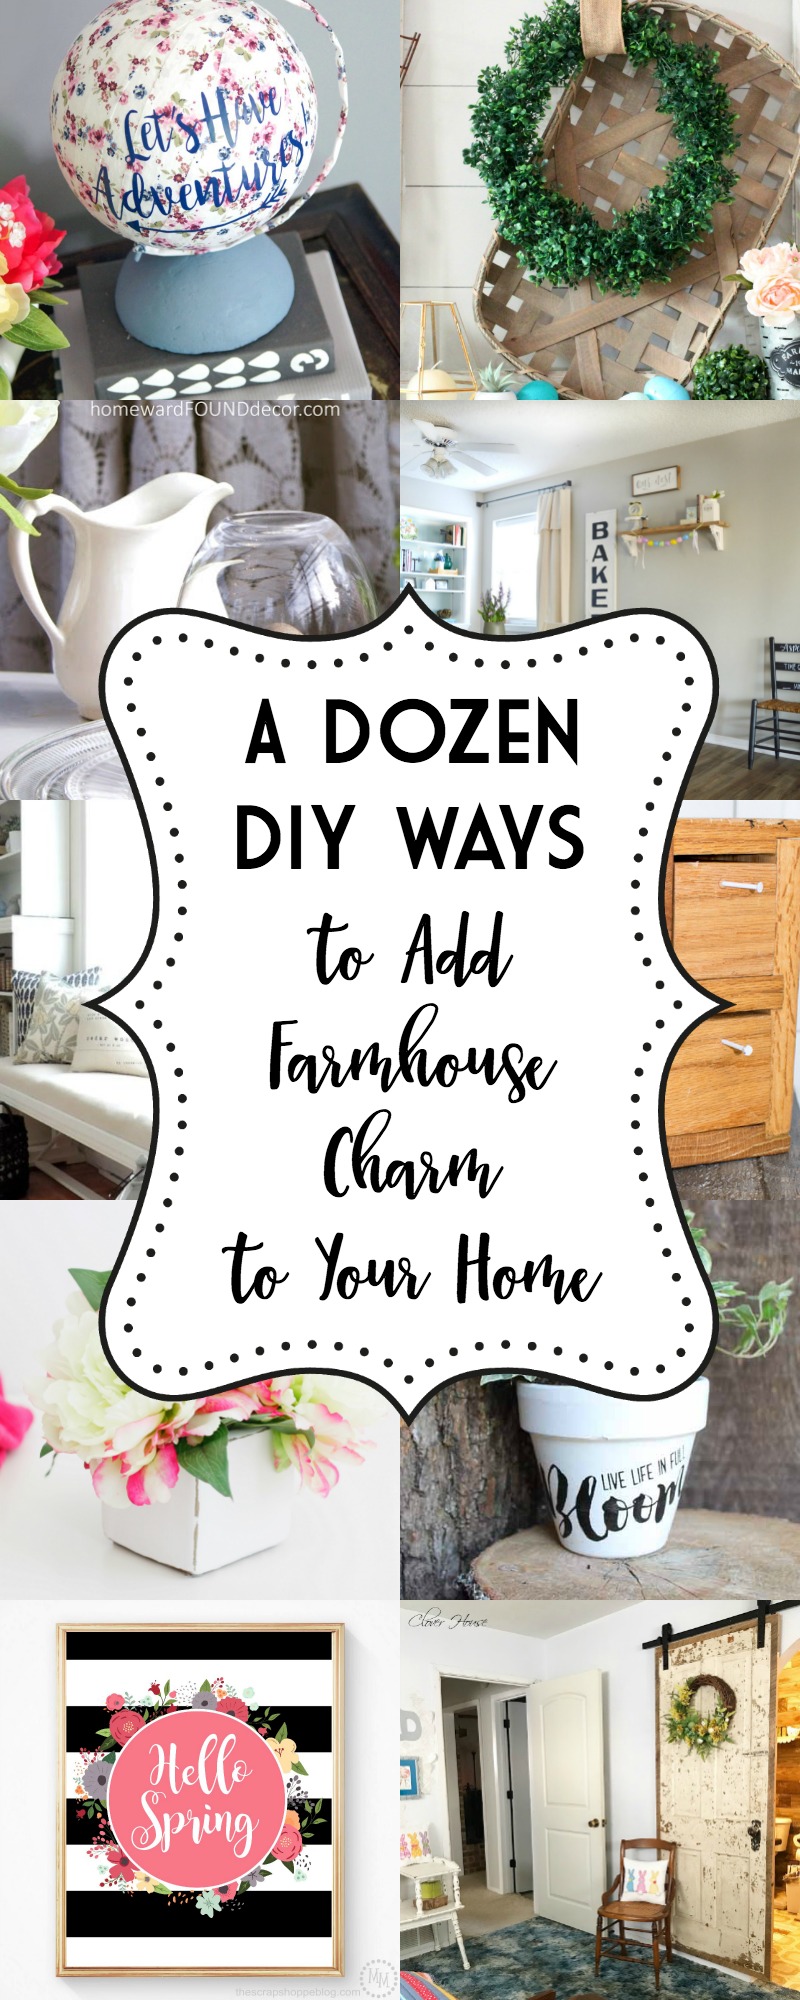 A Dozen Ways to Add Farmhouse Charm to Your Home